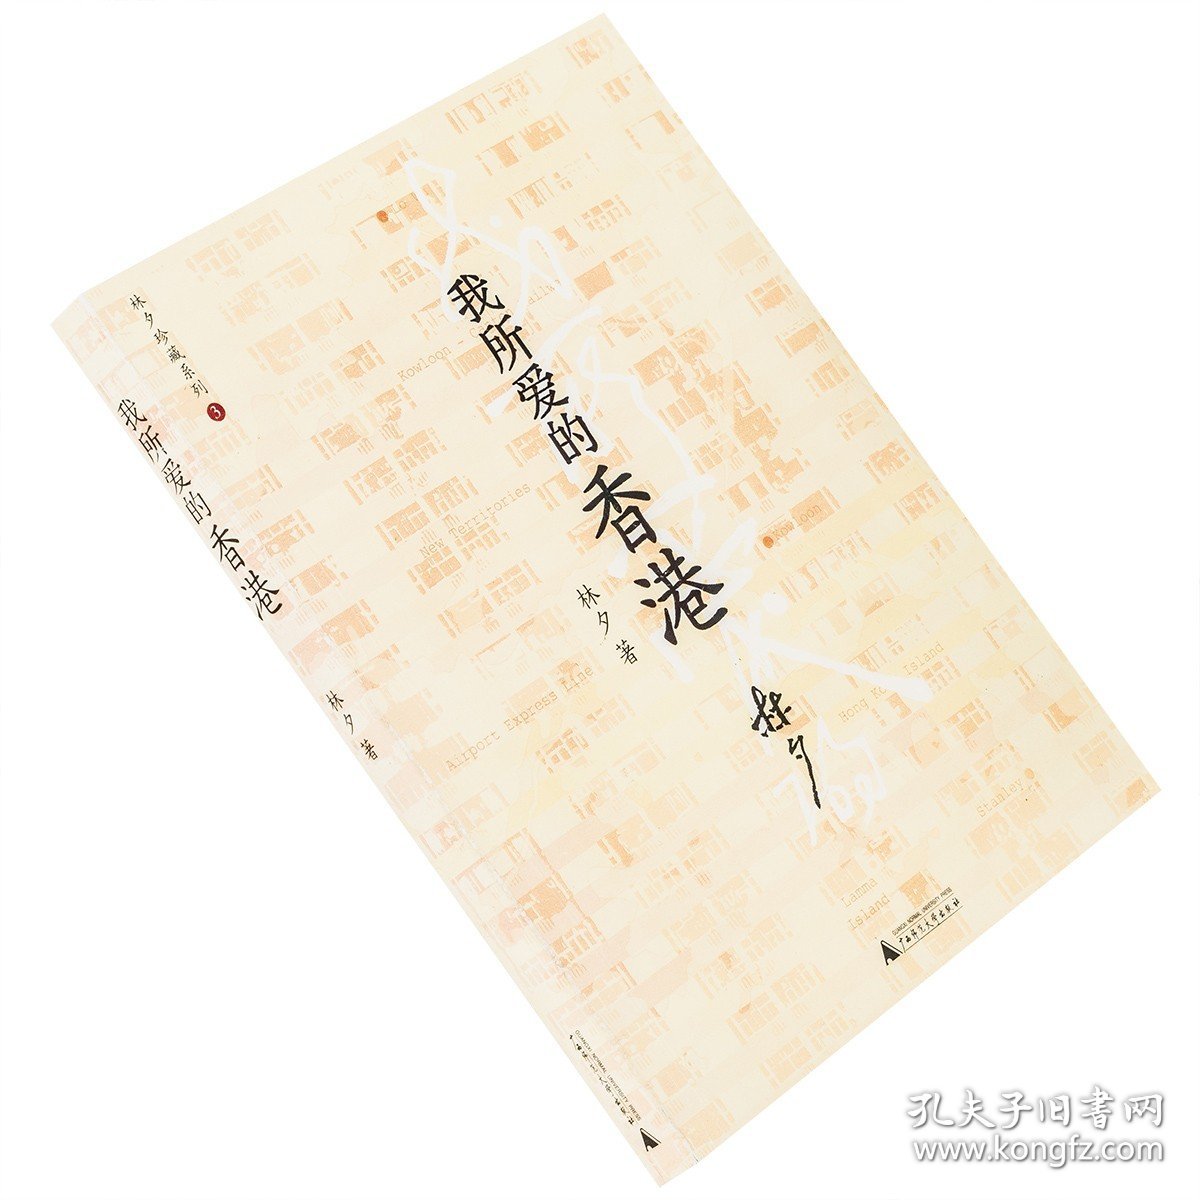 现货 我所爱的香港 林夕珍藏系列 广西师范大学 老版